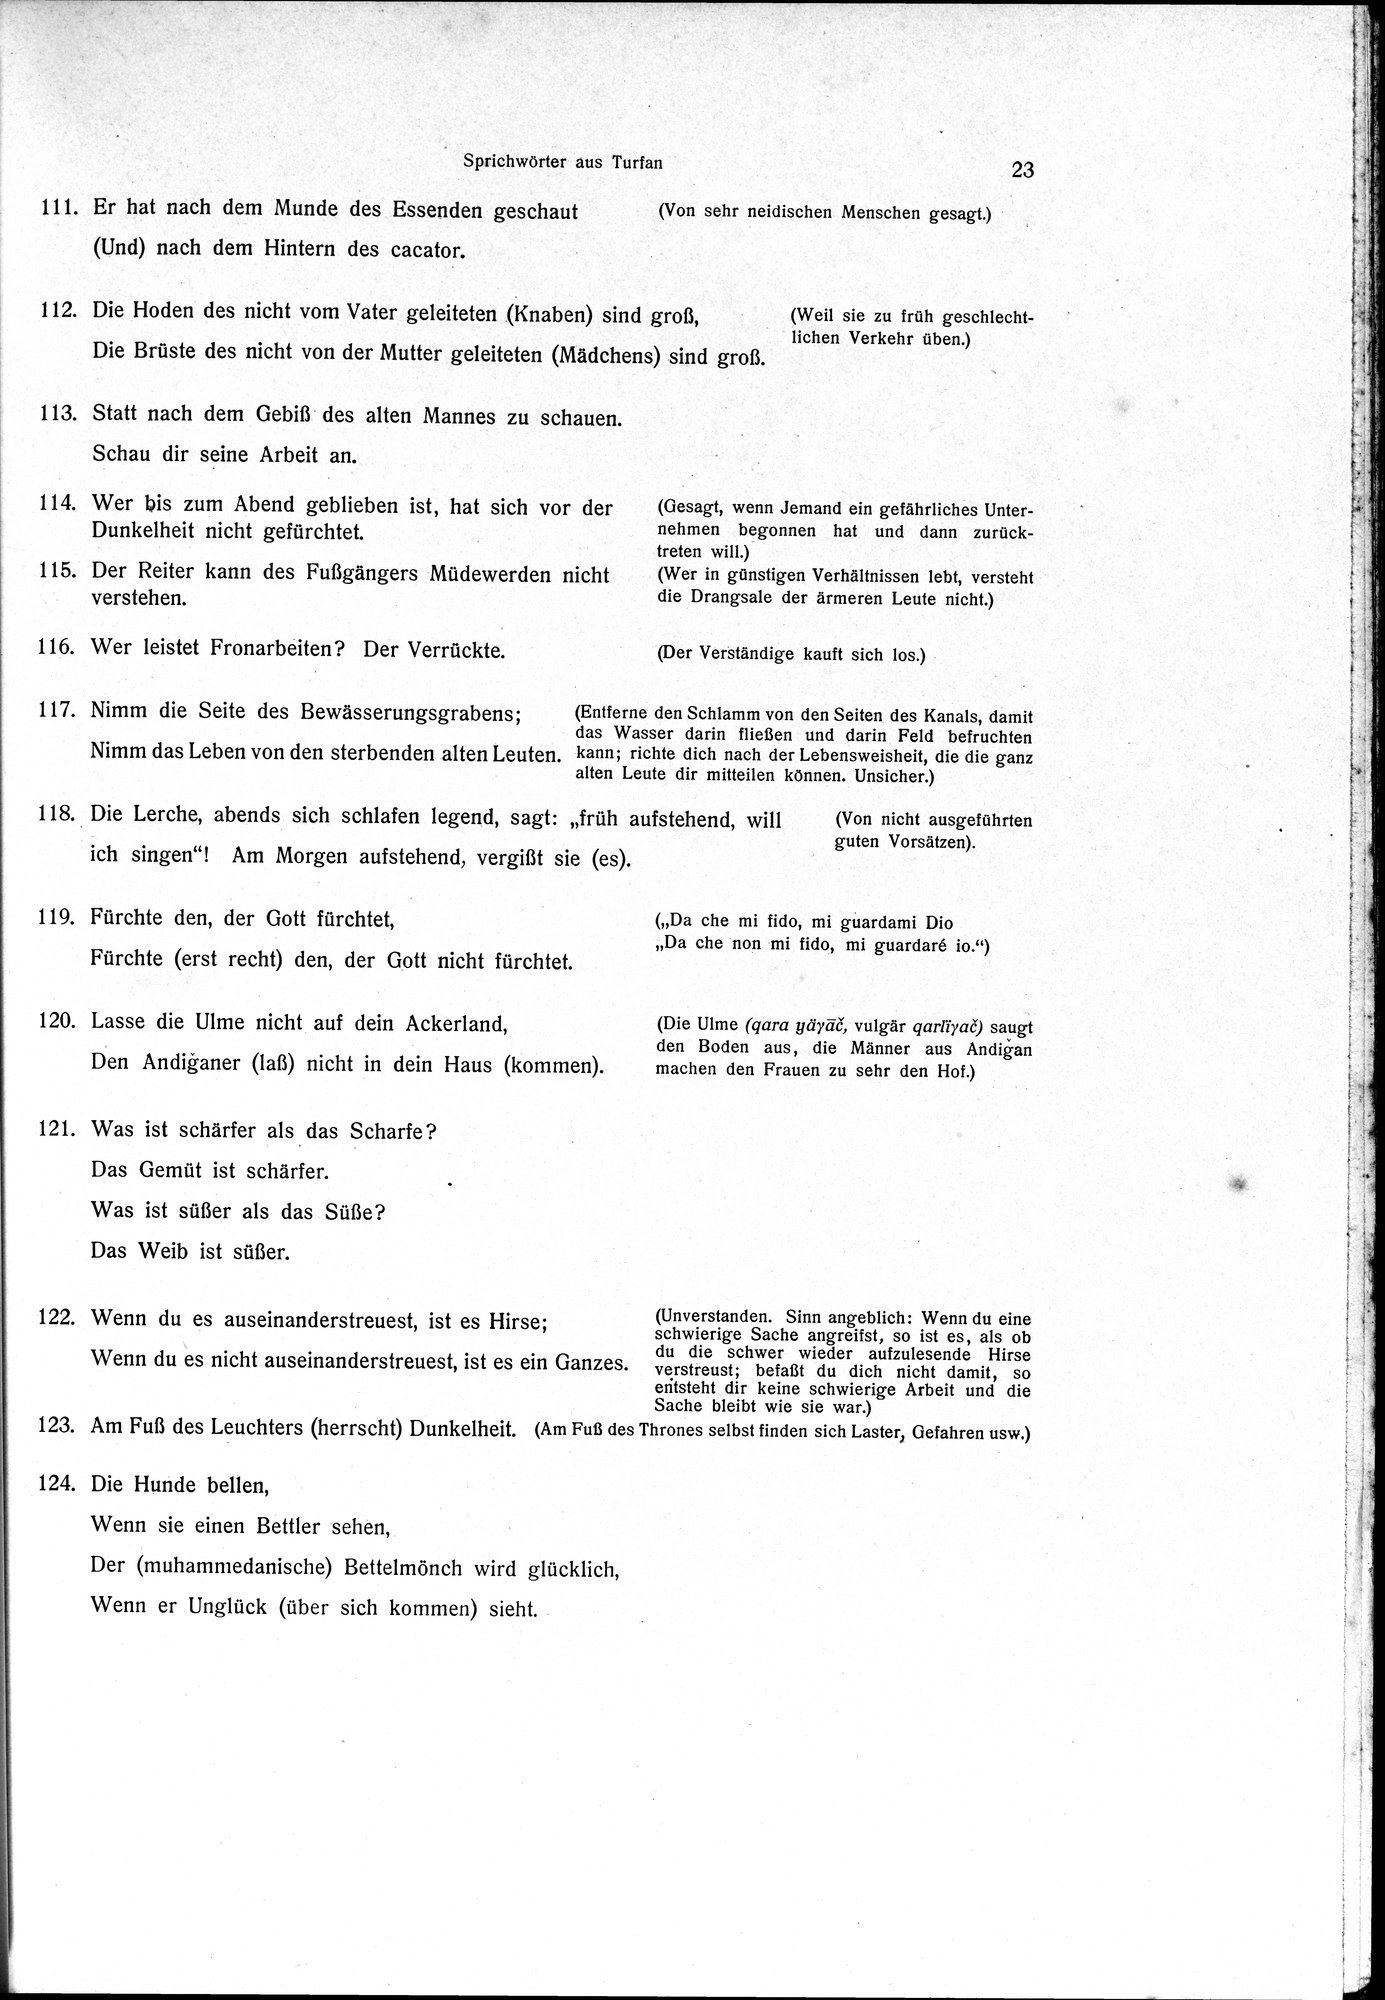 Sprichwörter und Lieder aus der Gegend von Turfan : vol.1 / Page 35 (Grayscale High Resolution Image)